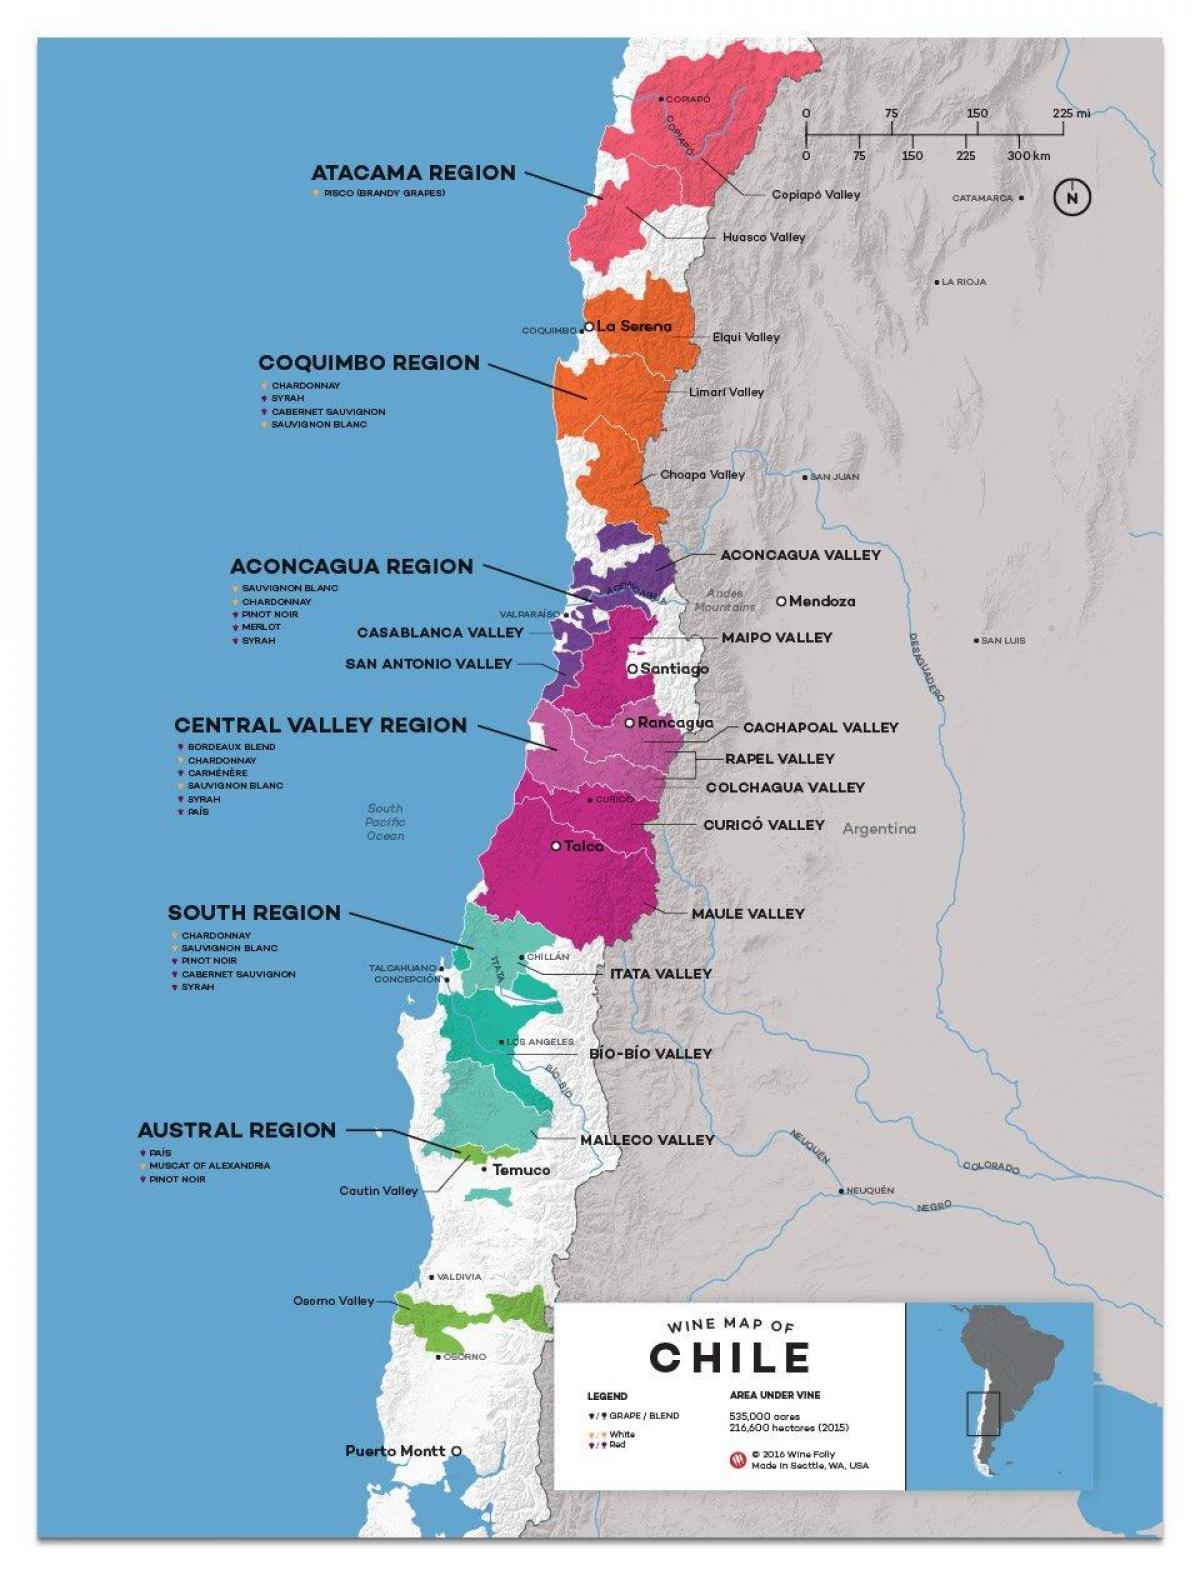 Il cile, paese del vino sulla mappa